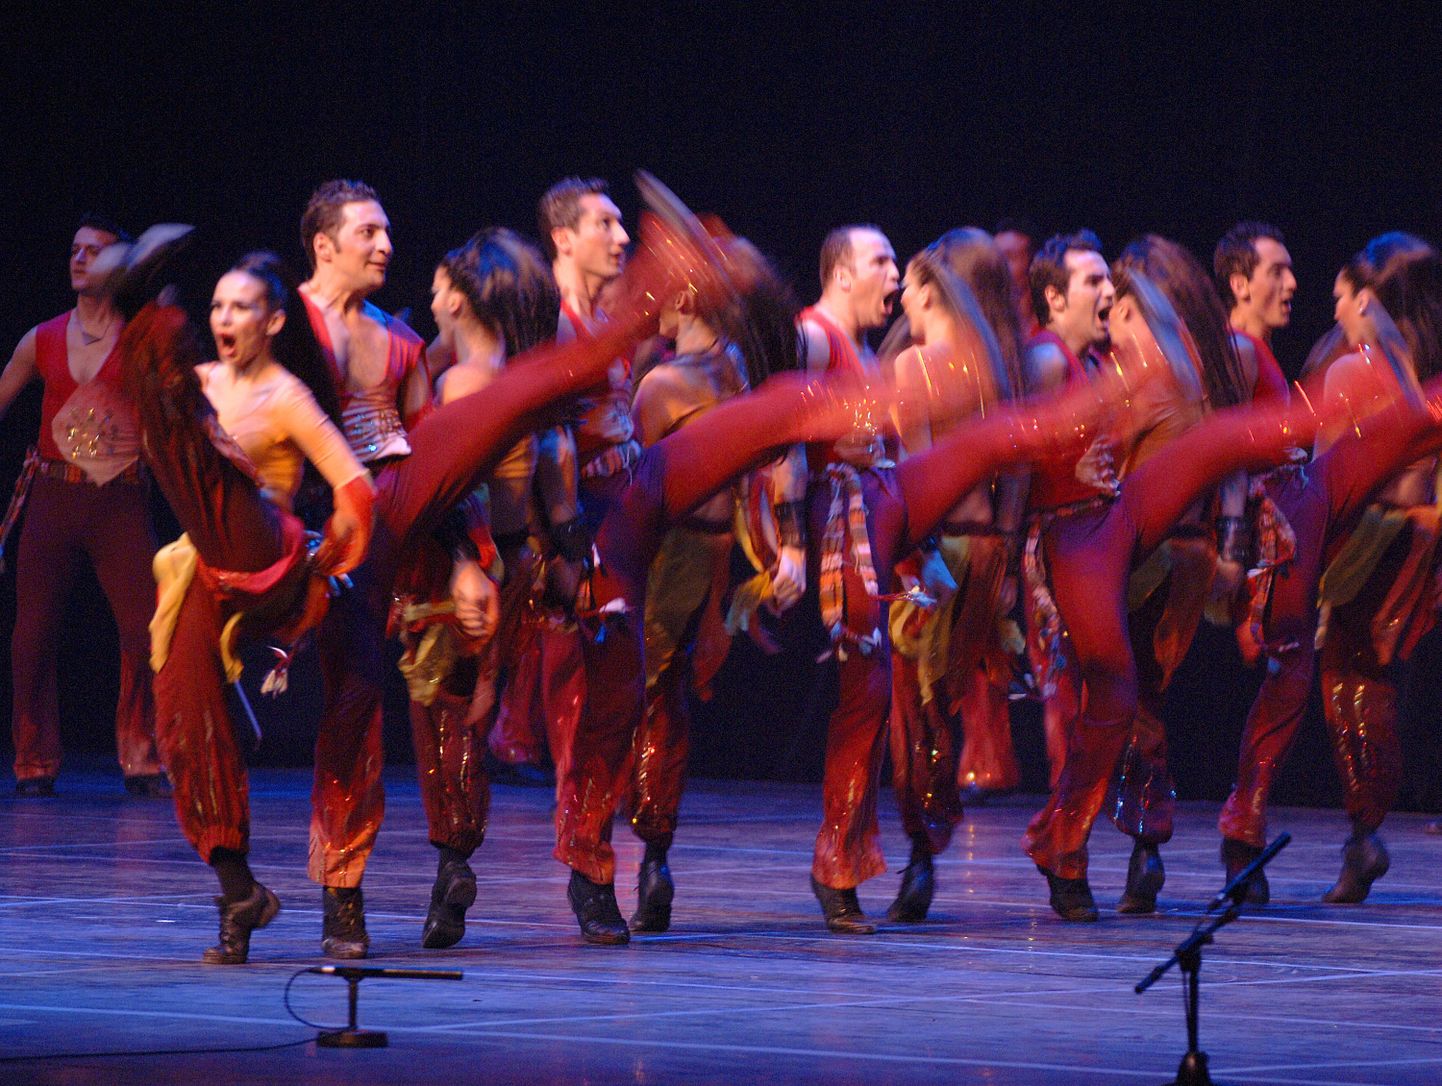 Naisepeksja põhjendas oma tegevust rahvatantsu tantsimisega. Fotol Türgi rahvatantsijad kolbastit tantsimas